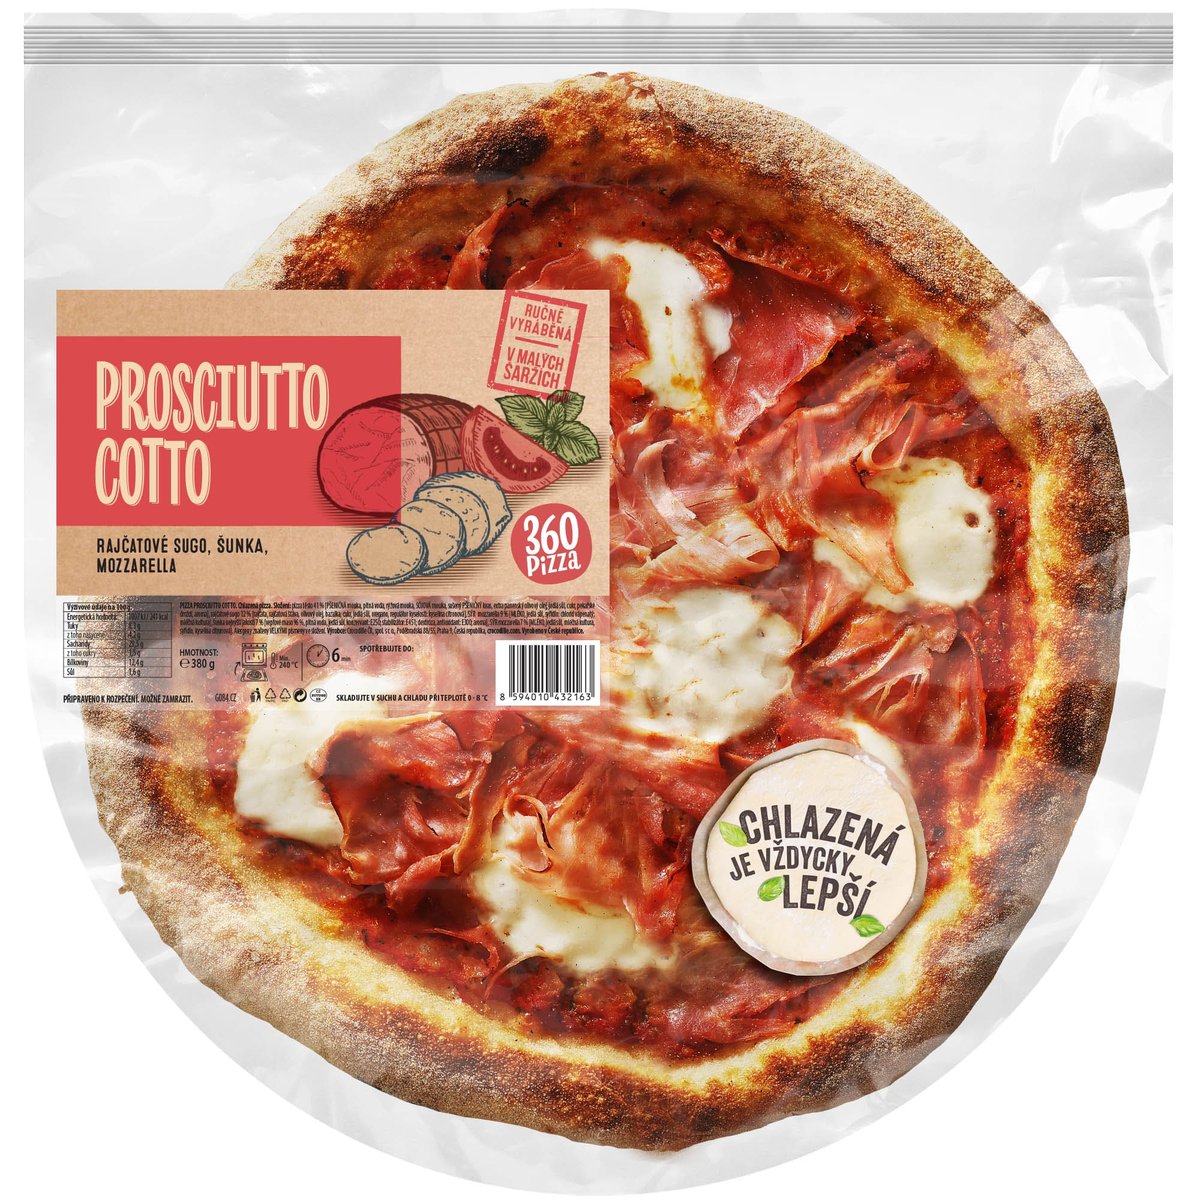 360 Pizza Prosciutto cotto